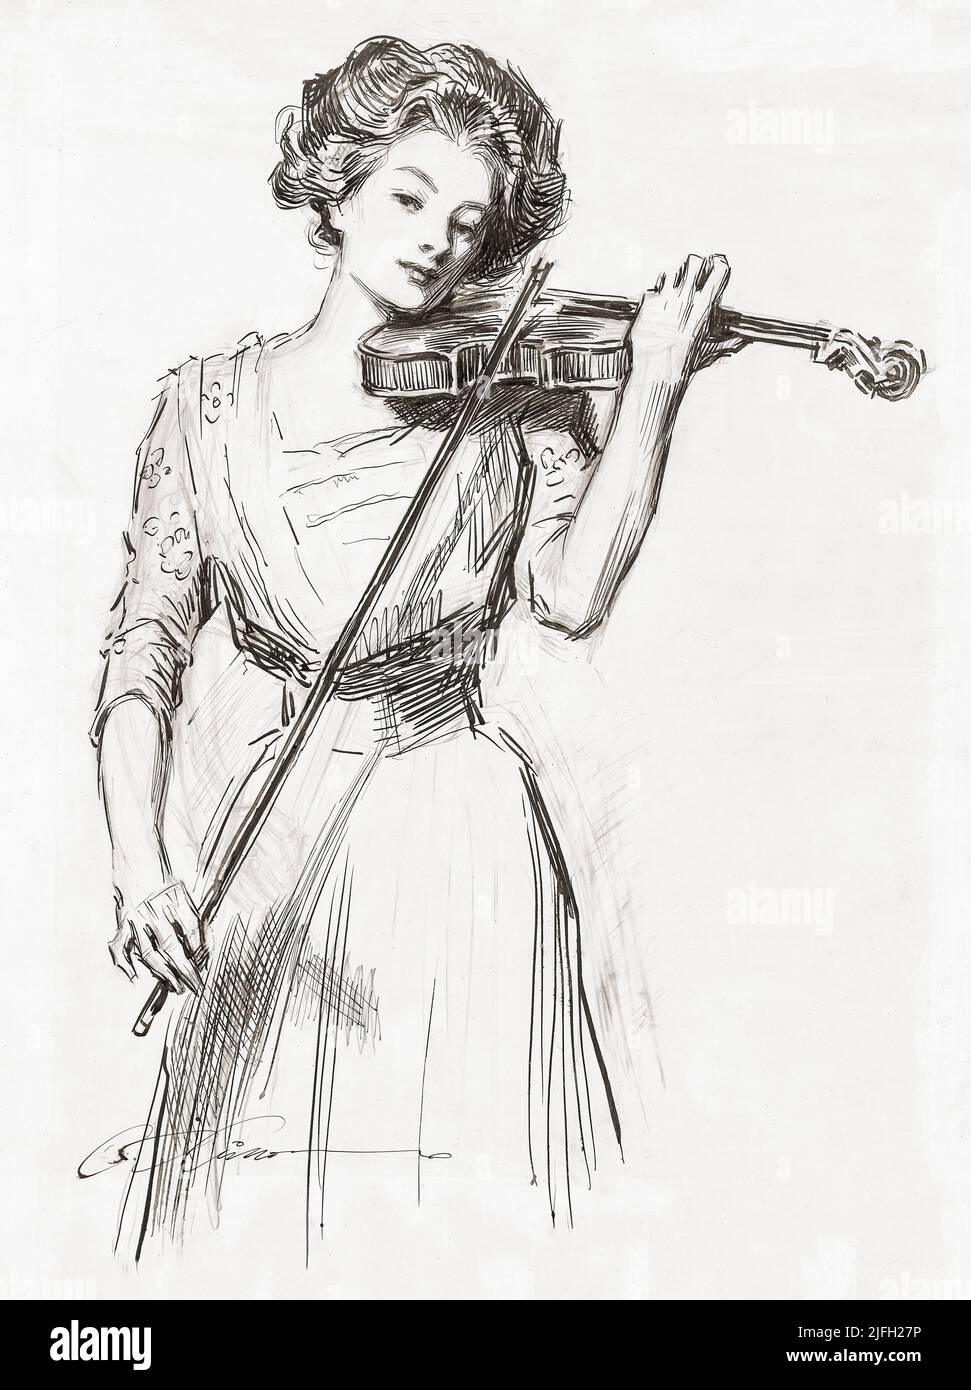 Une belle femme euro-américaine jouant un violon (violon) au tournant du 20th siècle par Charles Dana Gibson (1867-1944), un illustrateur américain. Banque D'Images